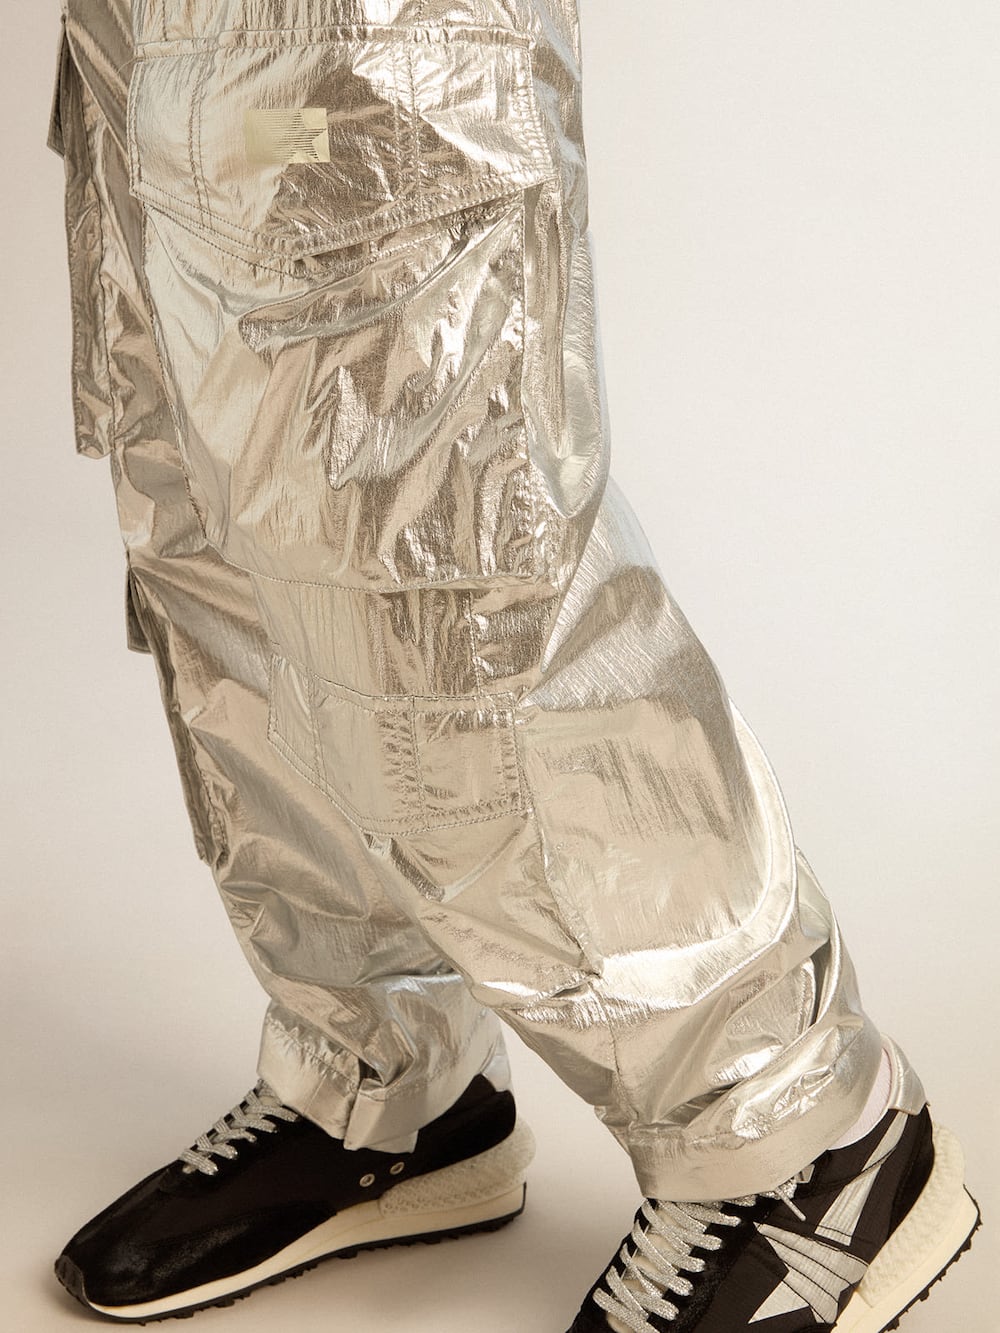 Golden Goose - Pantalon cargo pour homme en tissu technique argenté in 